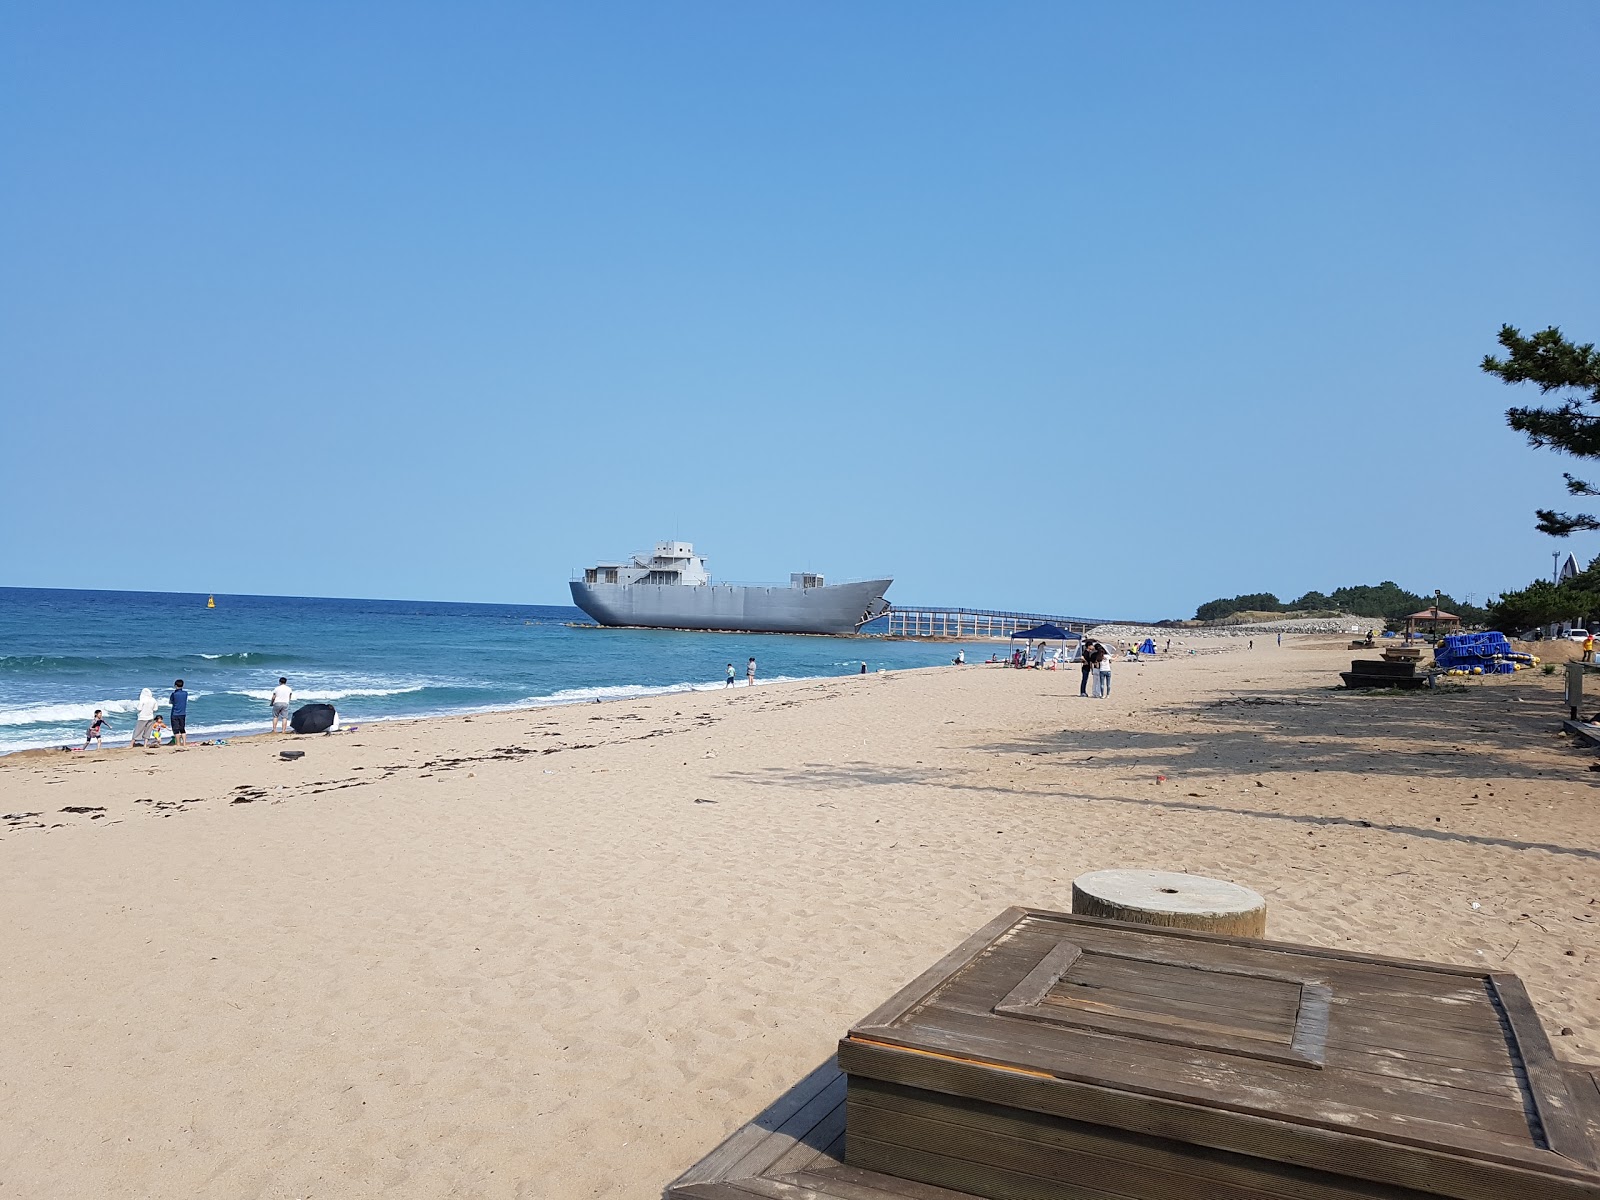 Fotografie cu Jangsa Beach - locul popular printre cunoscătorii de relaxare